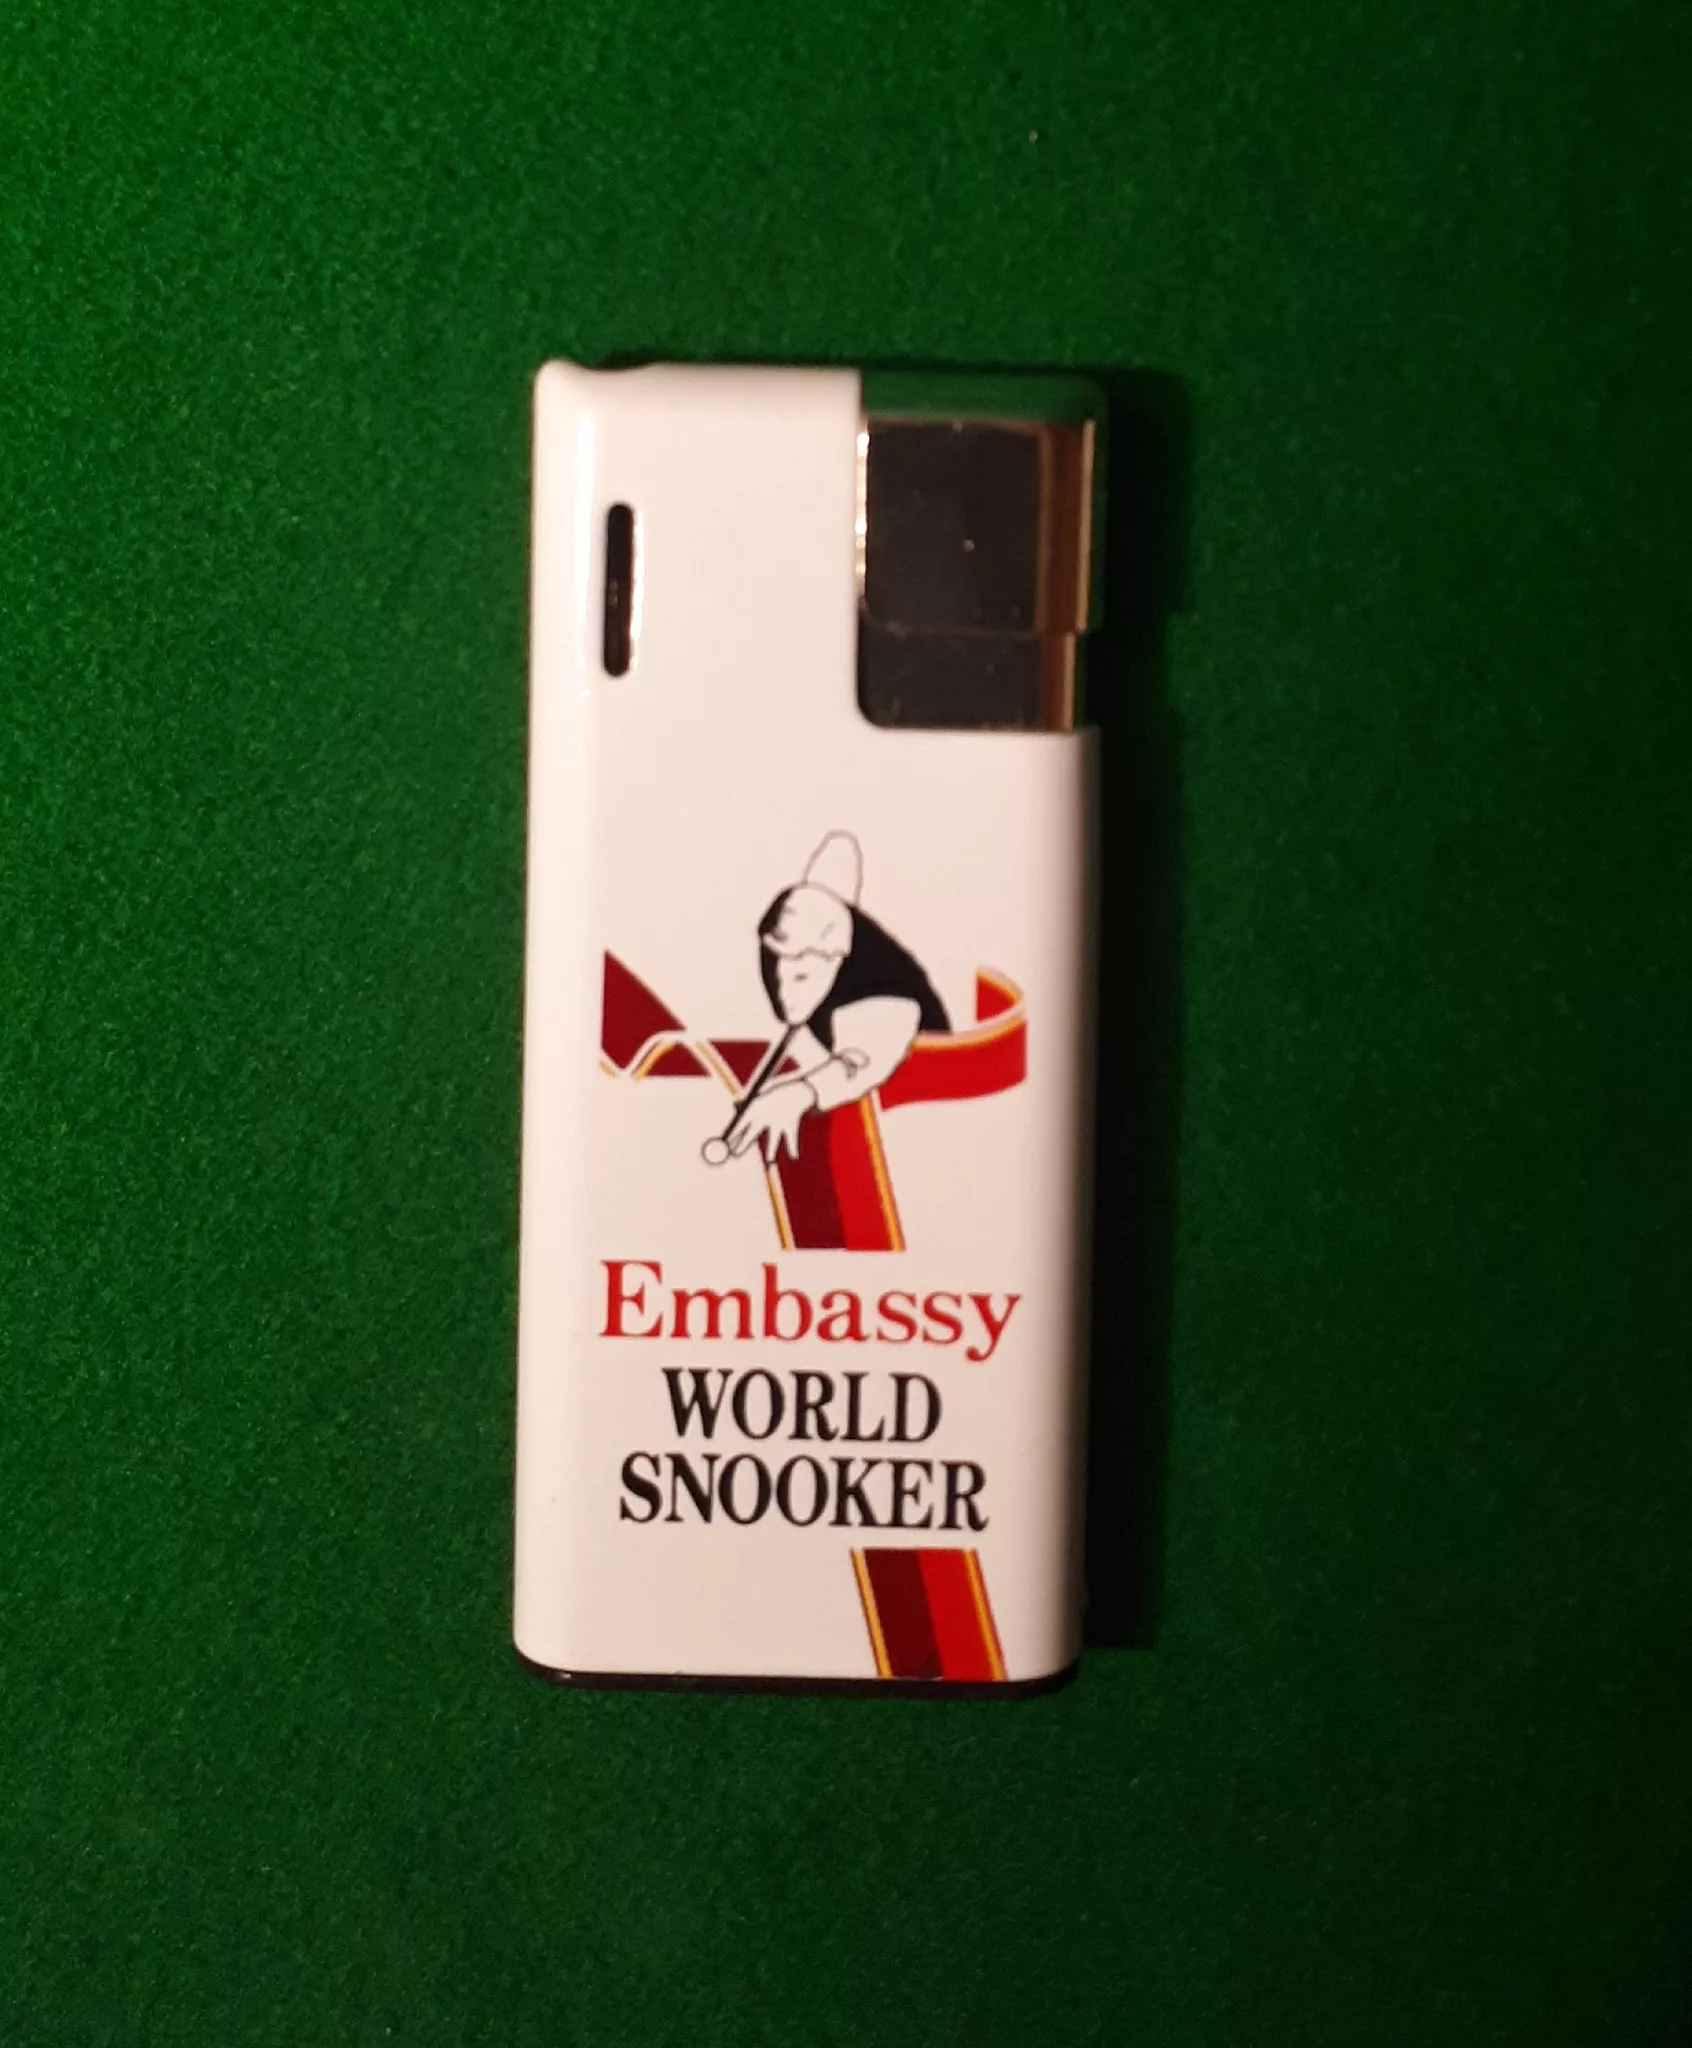 Embassy lighter